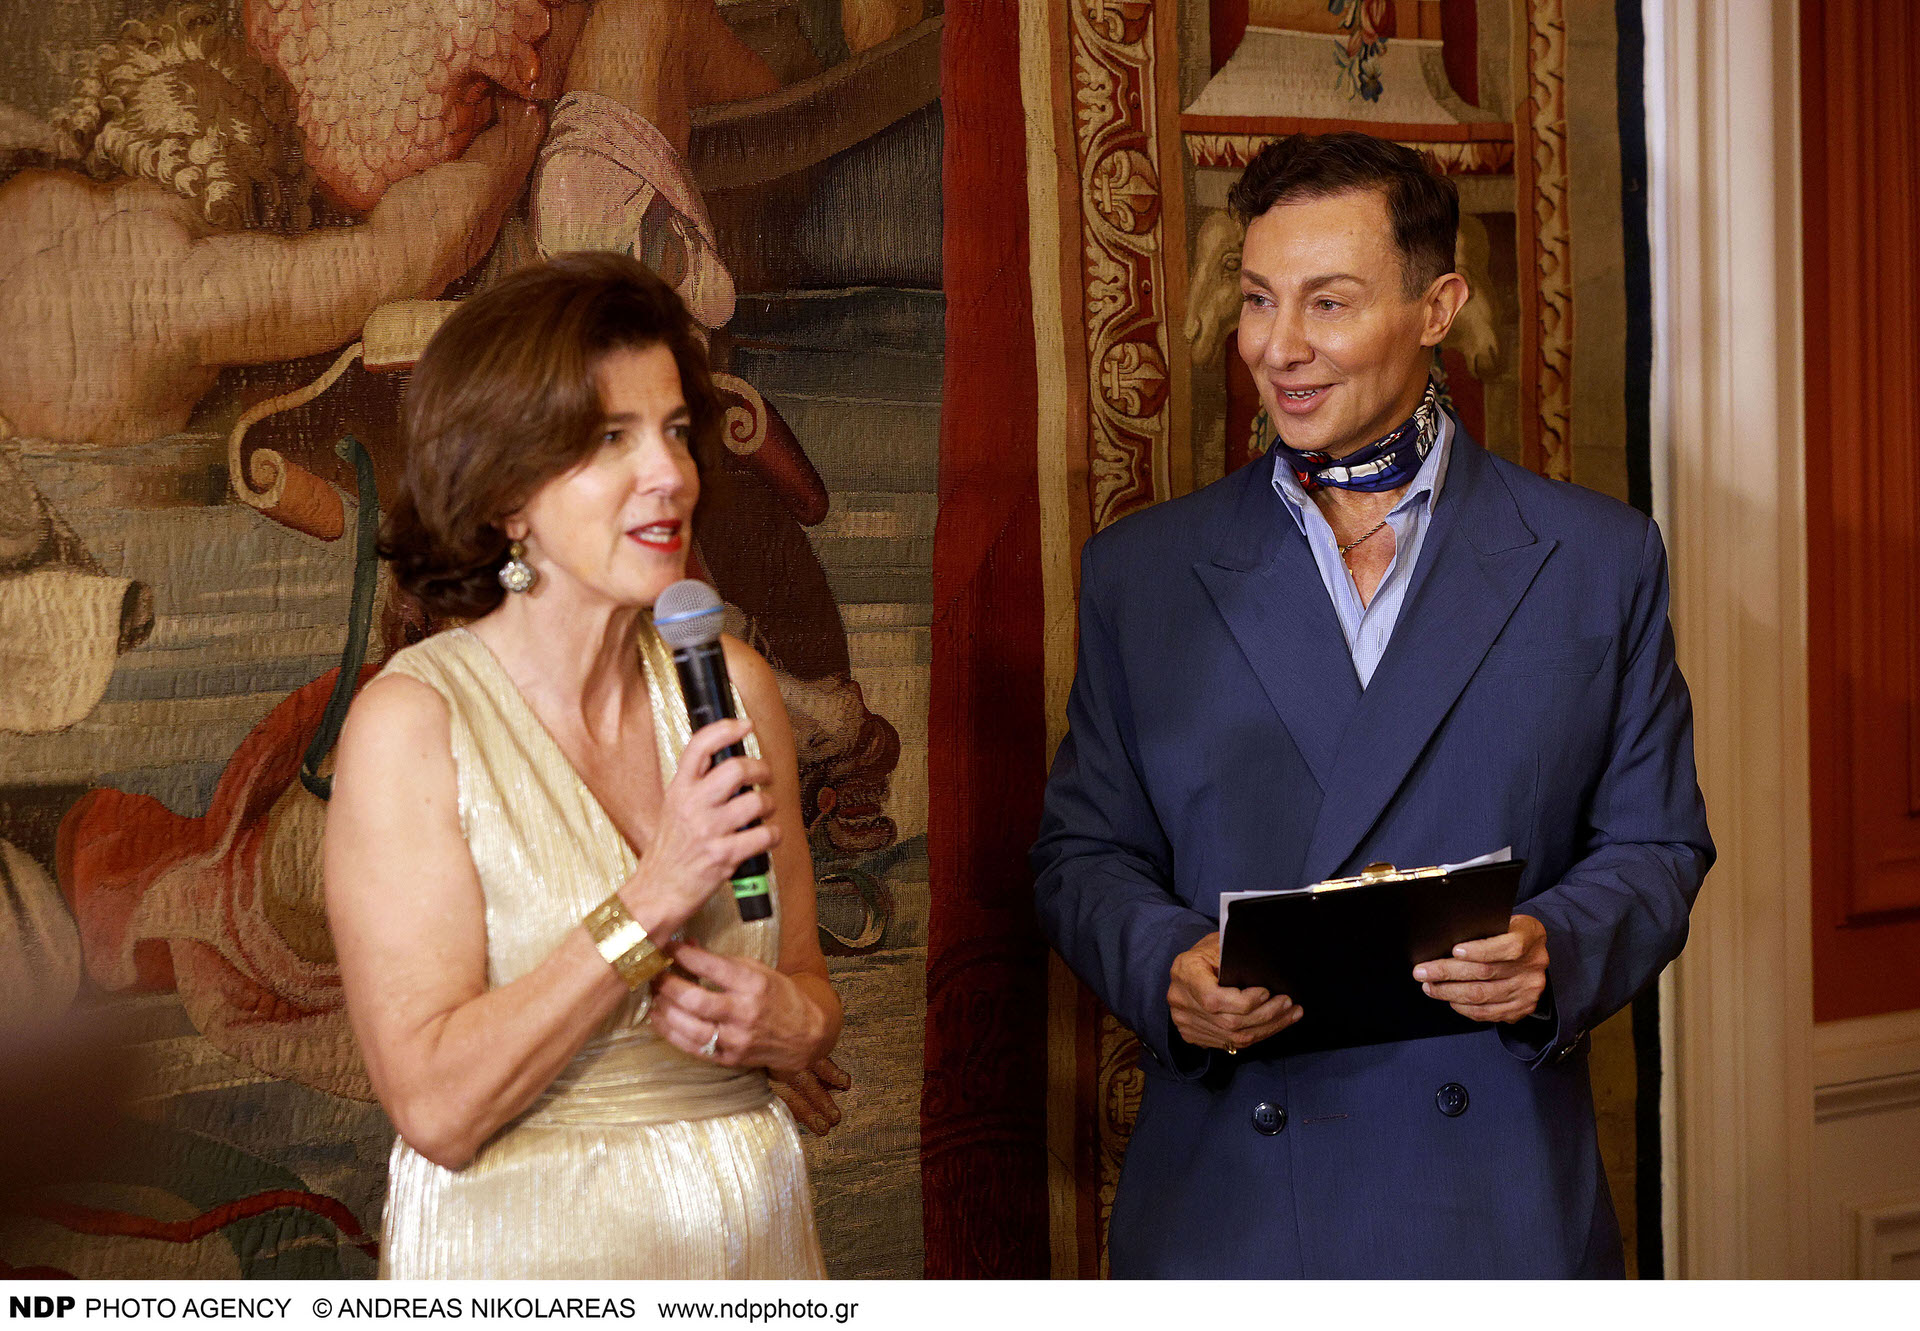 Ο Βασίλειος Κωστέτσος παρουσίασε την συλλογή του «L’Olympien Art Couture» στην Πρεσβεία της Γαλλίας